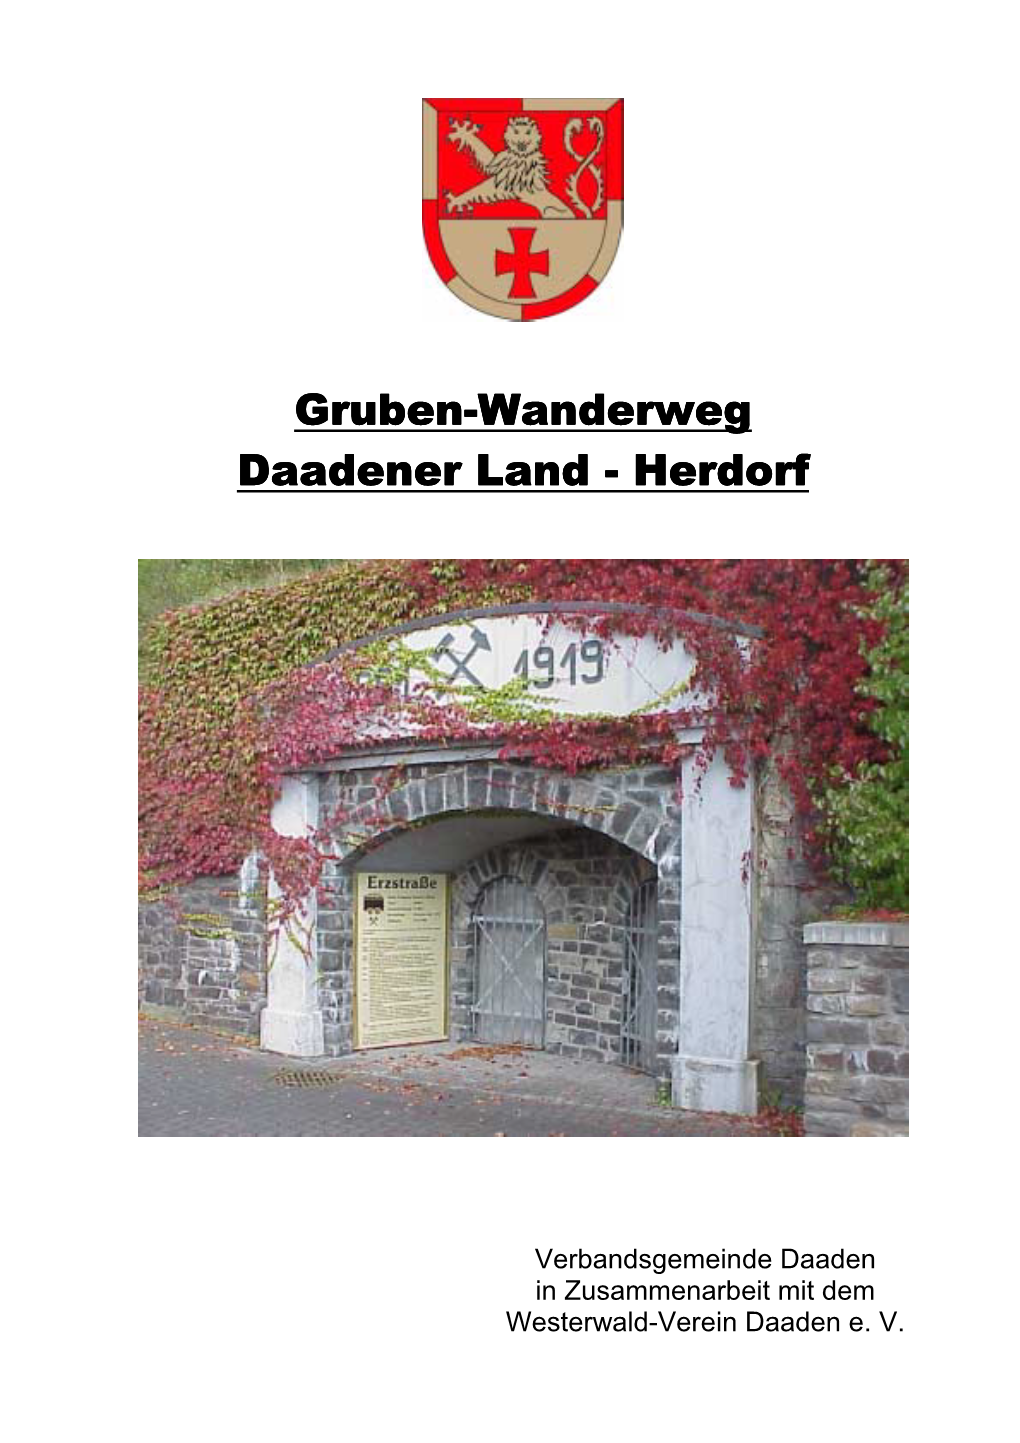 Vorbericht Zum Gruben-Wanderweg Daadener Land - Herdorf